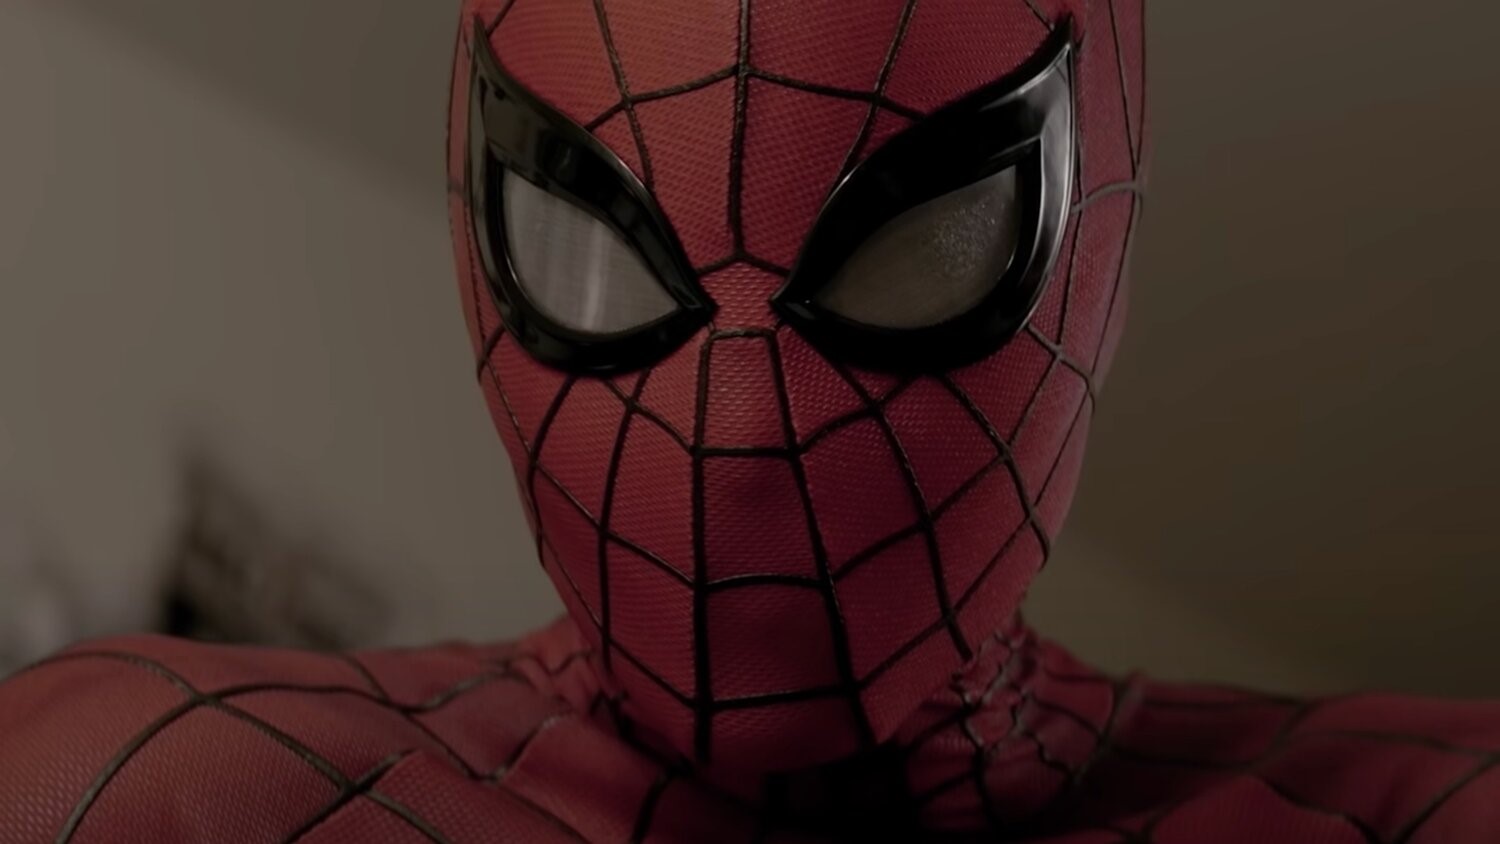 Ultra Tendencias: Teaser tráiler de una película de Marvel hecha por fans  SPIDER-MAN: LOTUS